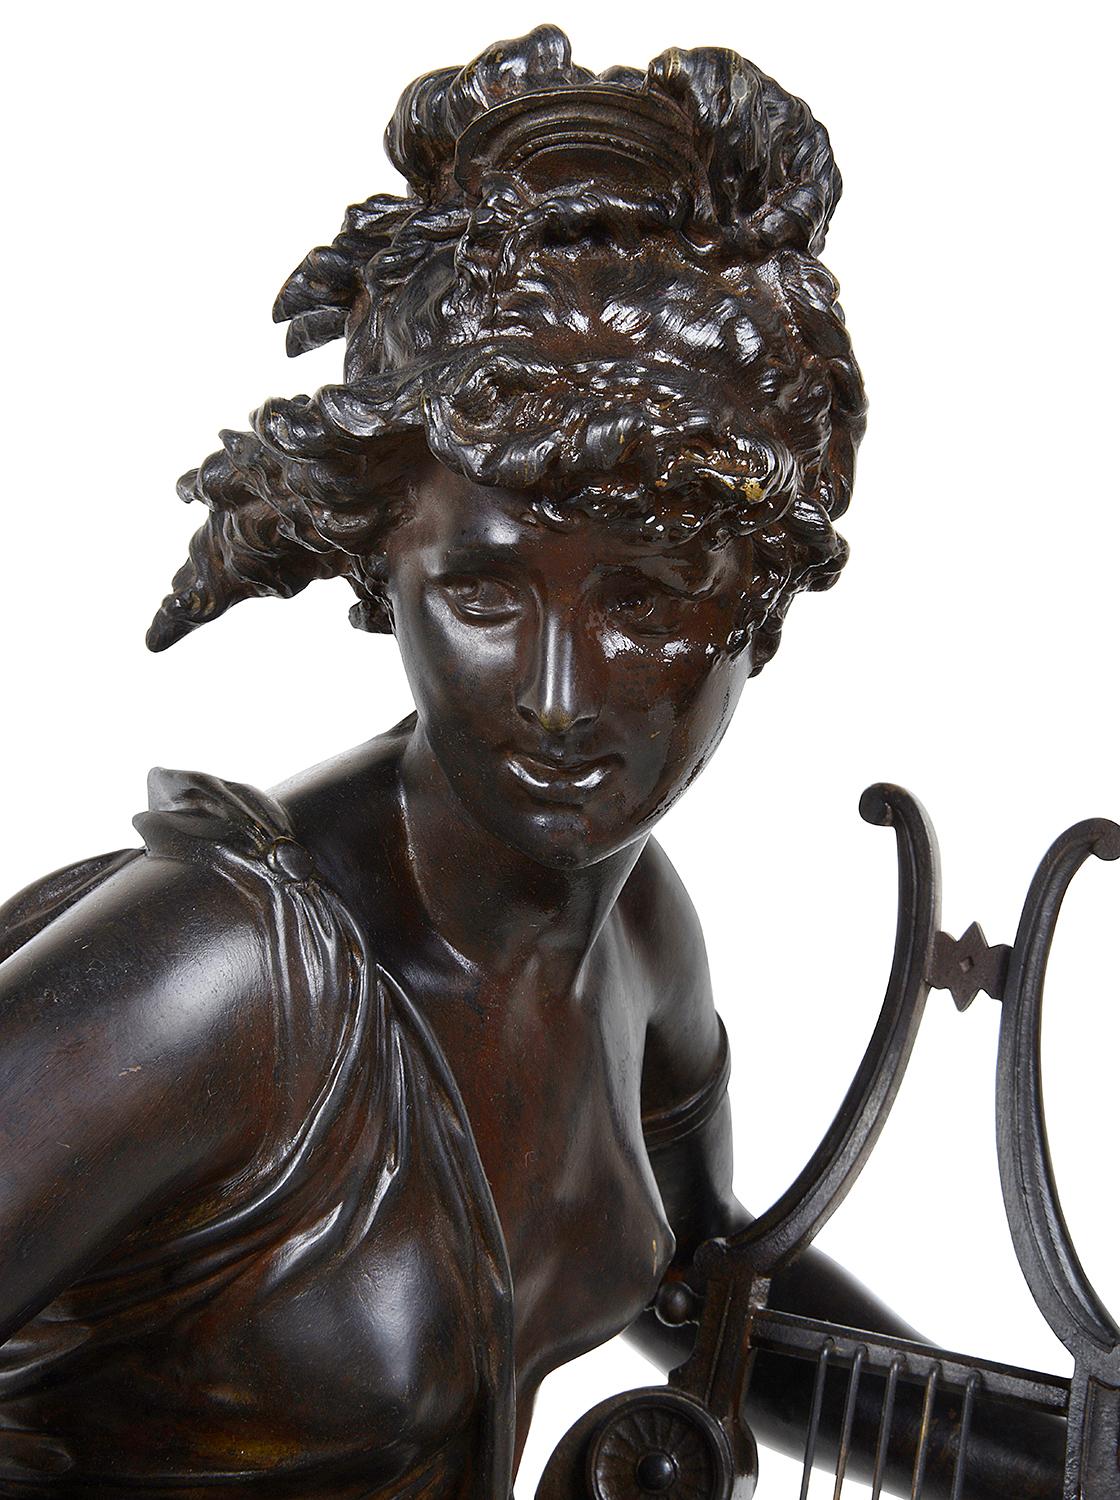 Sehr gute Bronzestatue aus dem 19. Jahrhundert mit einer weiblichen Figur, die eine Harfe hält, betitelt 'Harmone'.
Gezeichnet; Albert-Ernest Carrier-Belleuse

Albert-Ernest Carrier-Belleuse (geb. Albert-Ernest Carrier de Belleuse; 12. Juni 1824 -